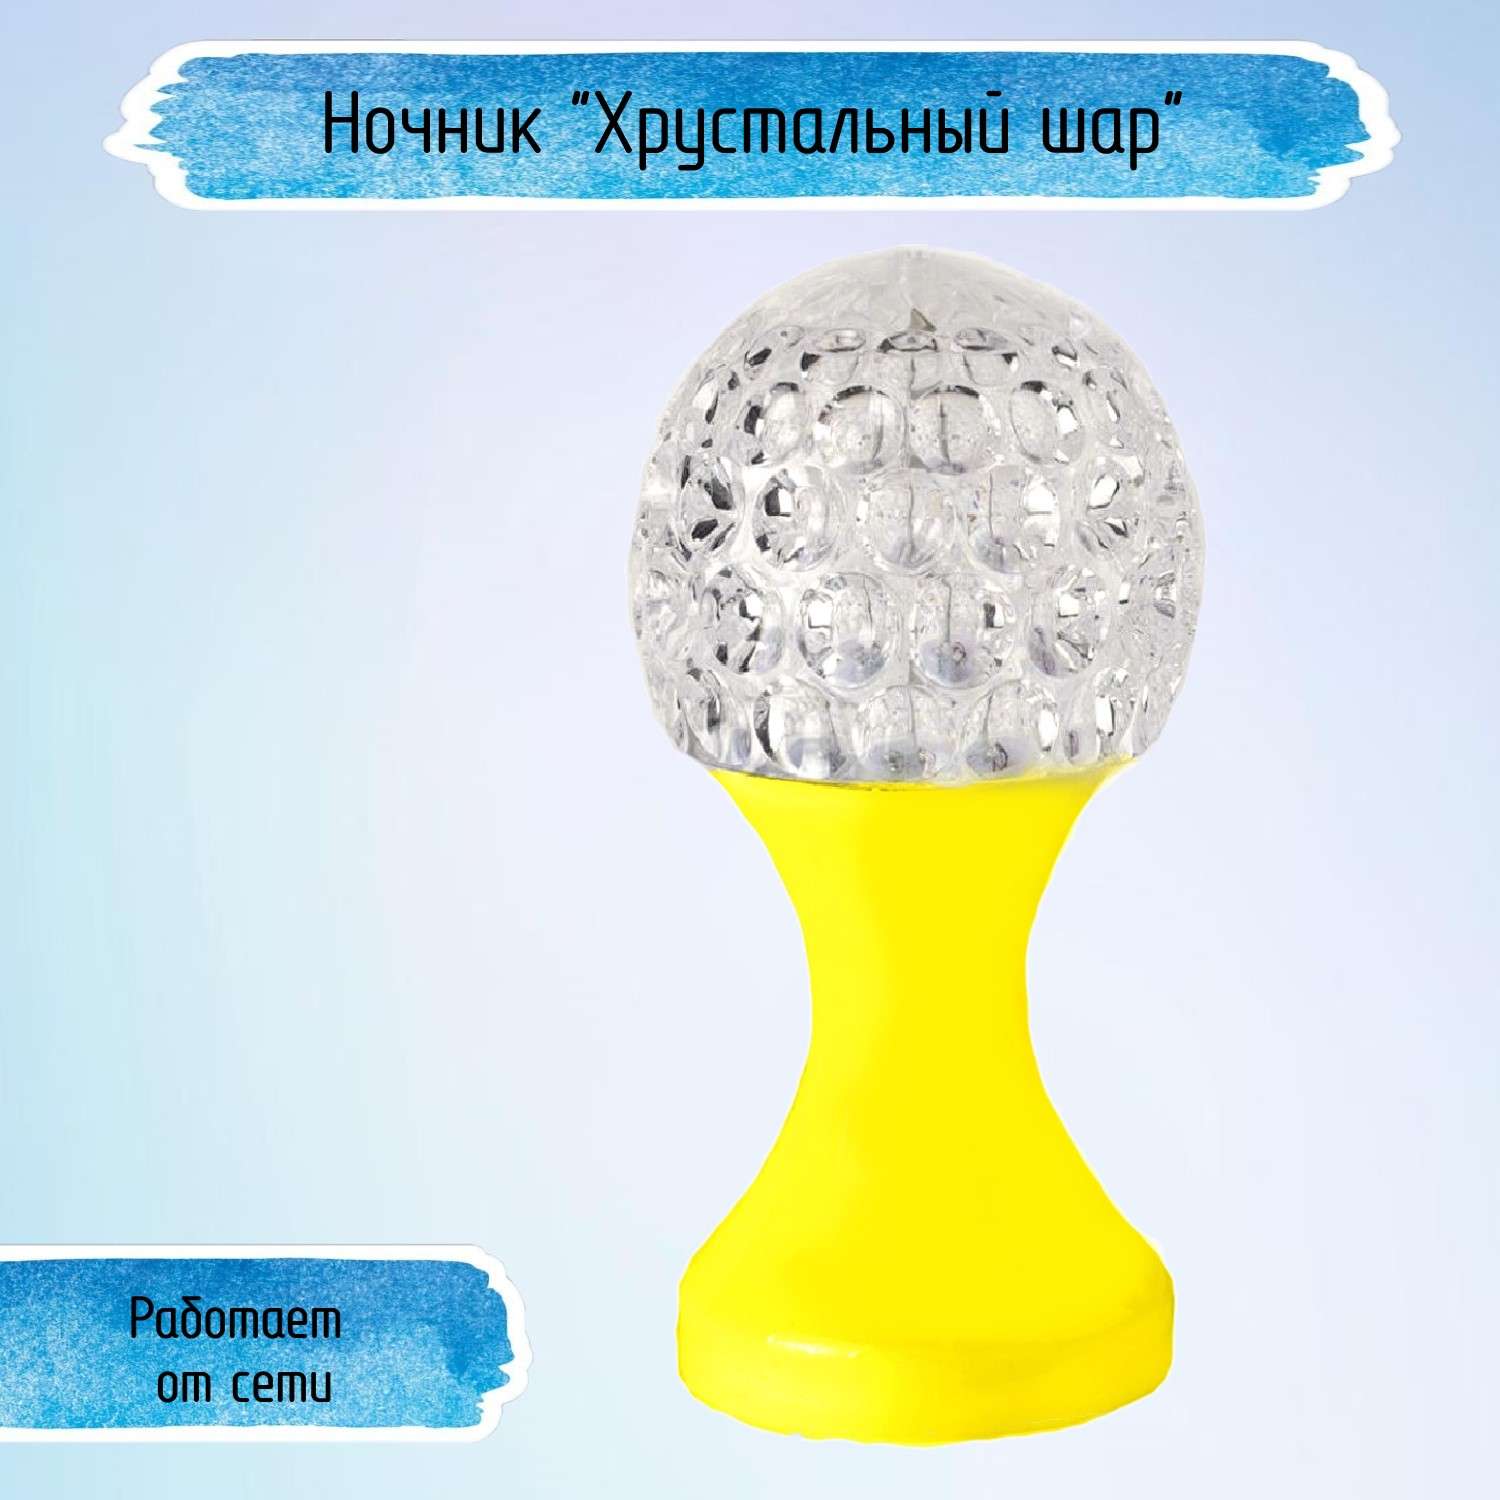 Ночник Uniglodis Кубок хрустальный шар жёлтая подставка - фото 1